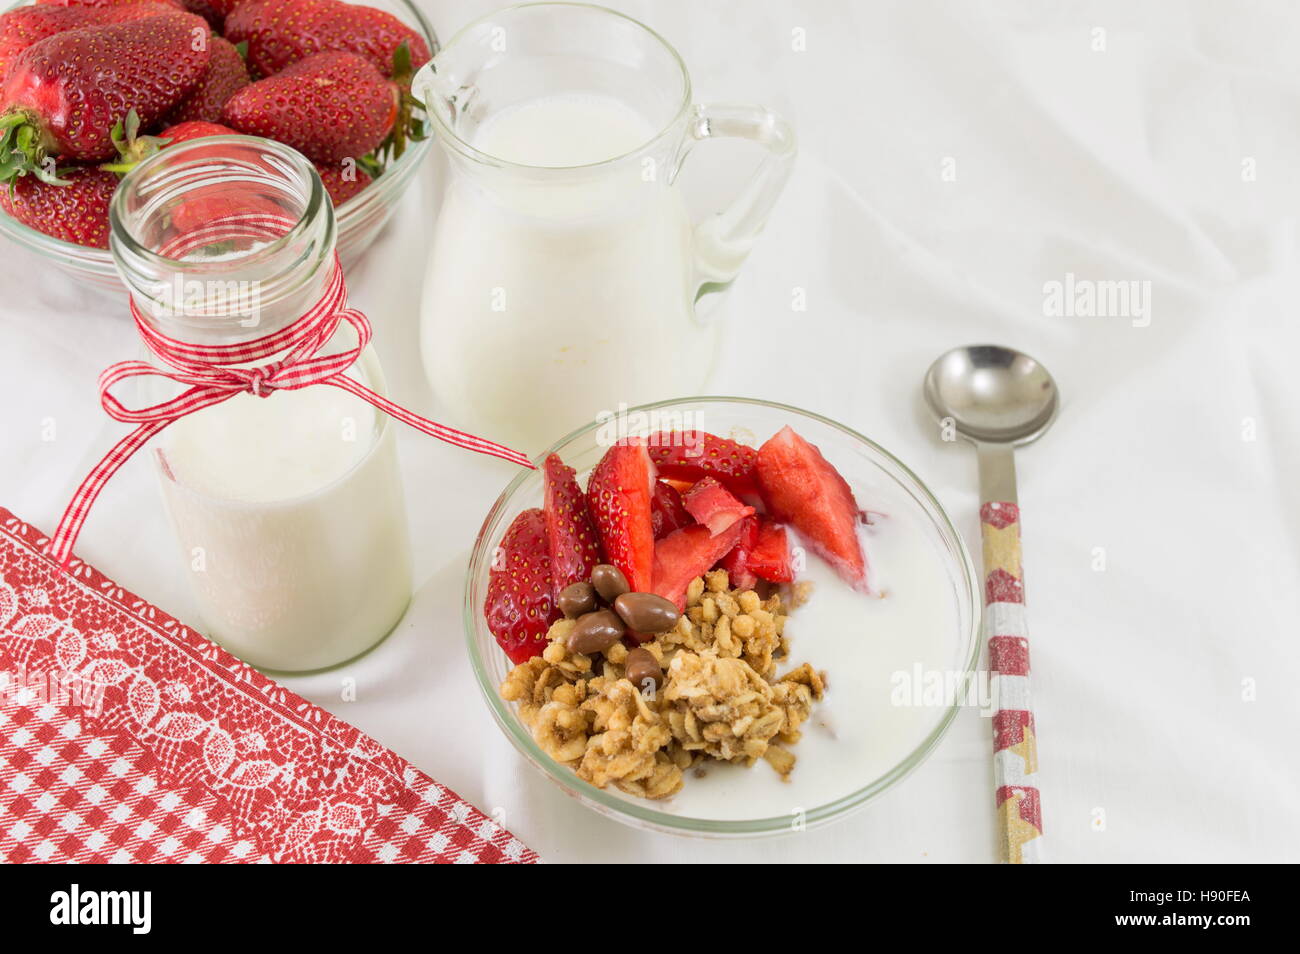 Granola, de fraises fraîches et de lait. Les ingrédients du petit-déjeuner sain Banque D'Images